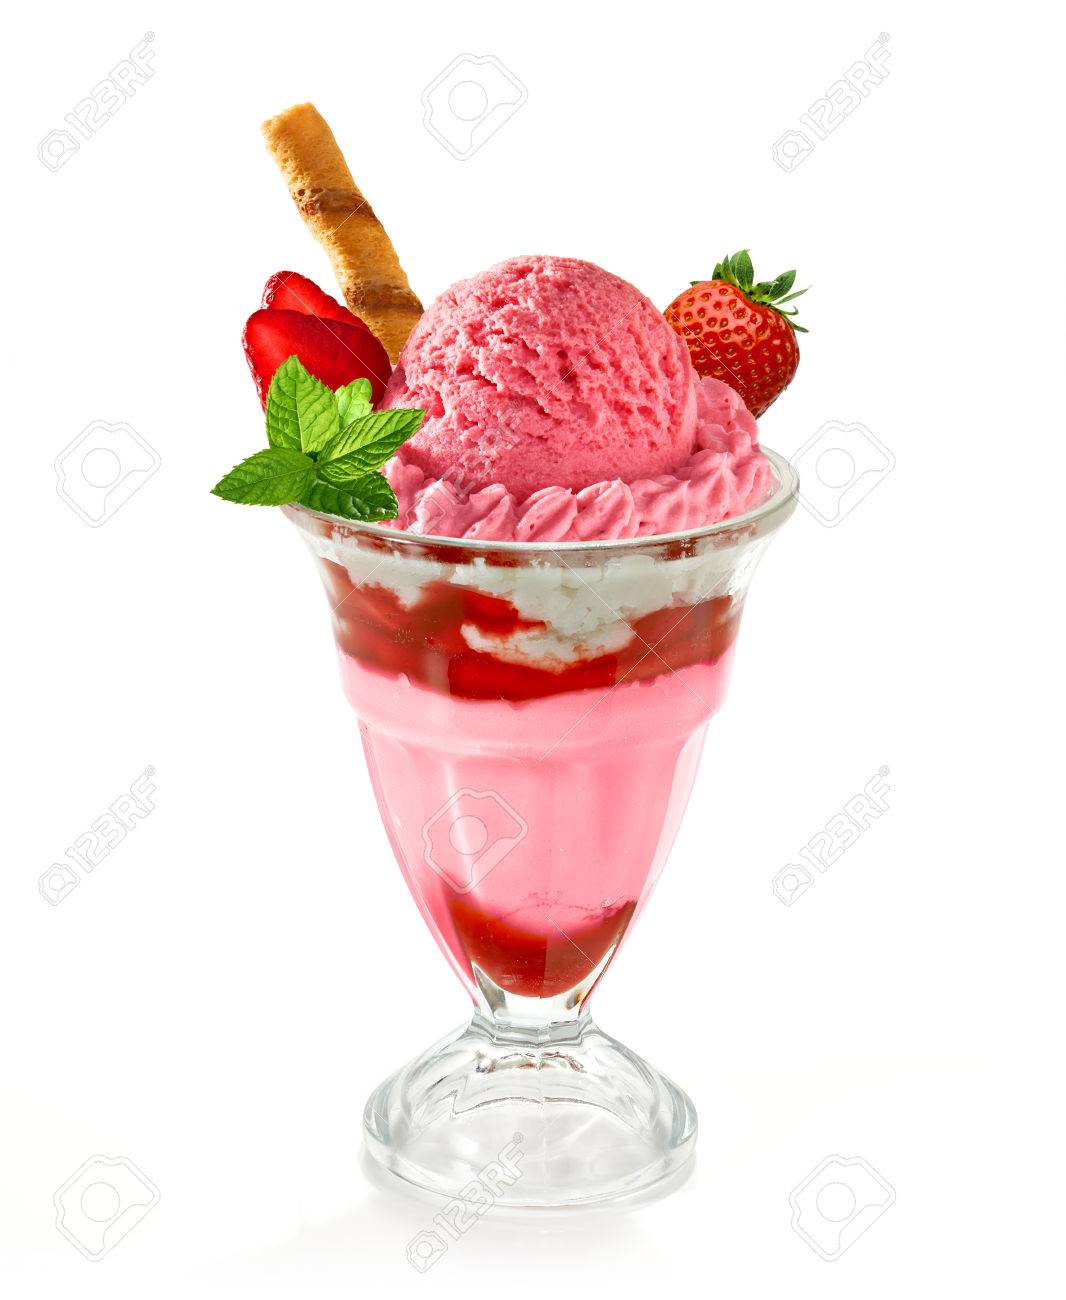 Strawberry Sundae Ice Cream On A White Background Stock